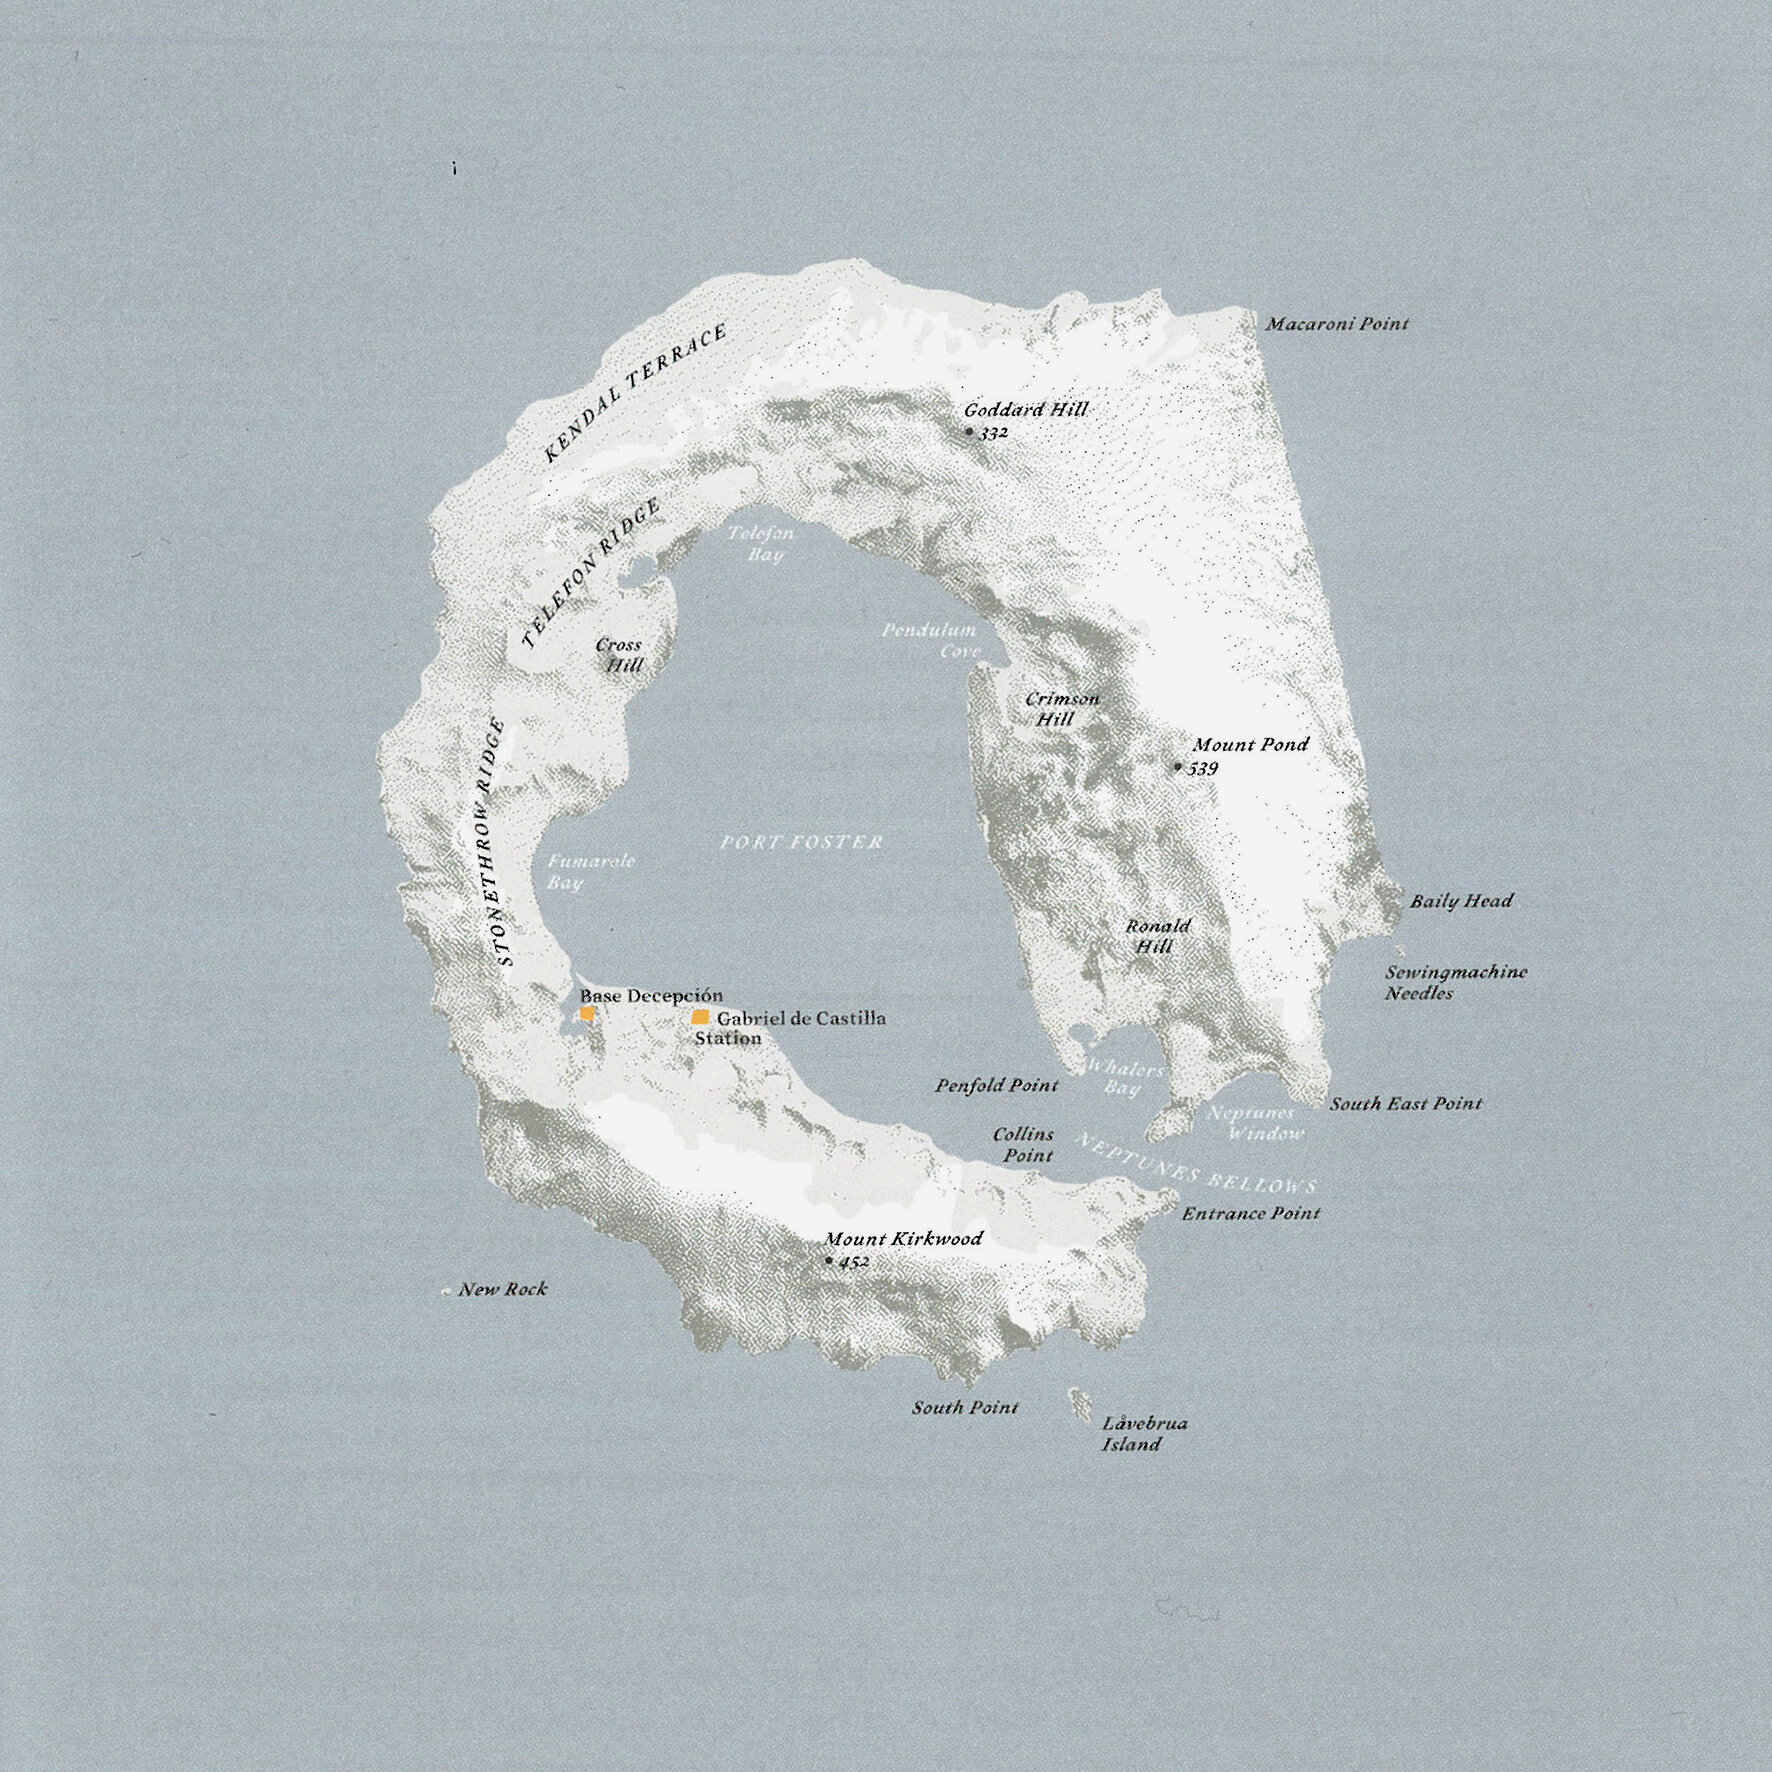  Isla Decepción Islas Shetland del Sud (Antártida) - Océano Antártico (62º 57’ S - 60º 38’ O / 98,5 Km2 deshabitada)  Ilustración: Judith Schalansky, Fuente: Atlas de Islas Remotas, Capitán Swing · Nørdicalibros 2013 